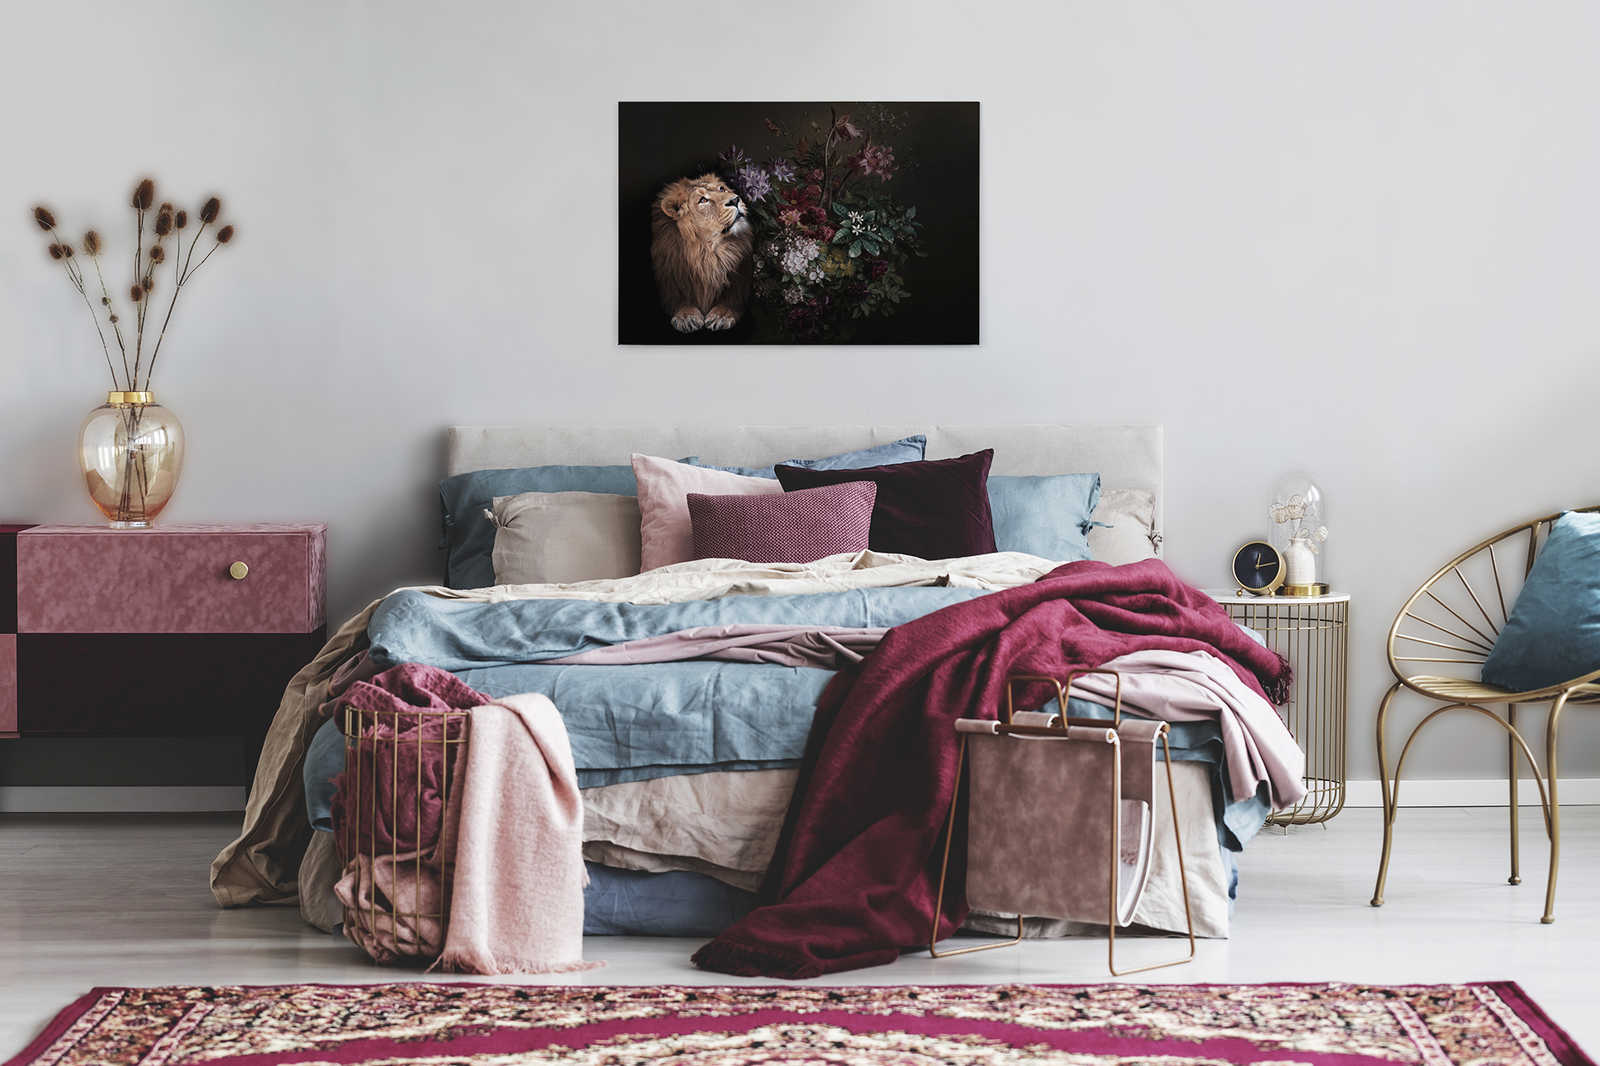             Canvas schilderij Leeuw portret met bloemen - 0,90 m x 0,60 m
        